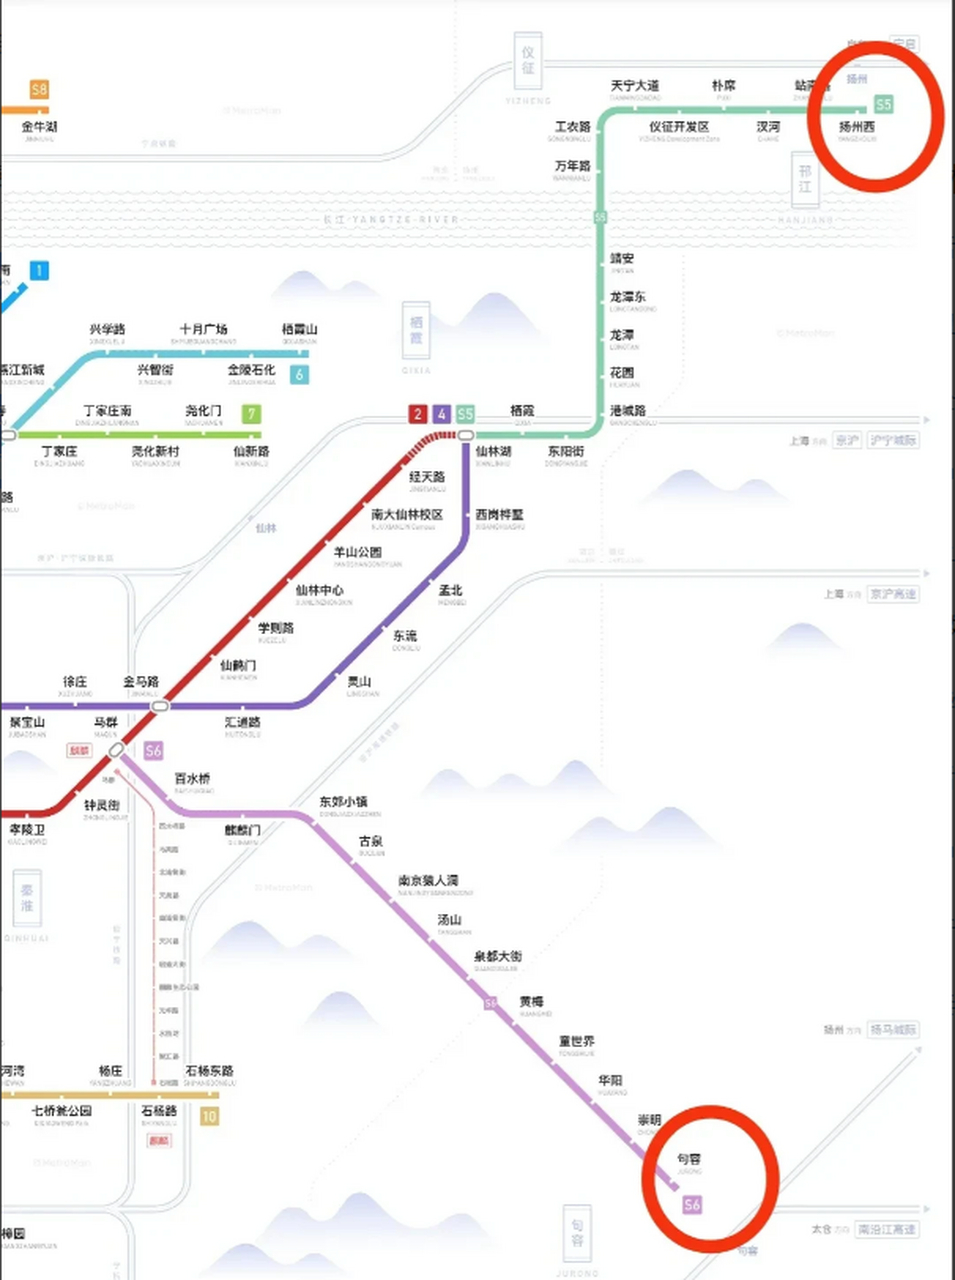 几年之后南京地铁能通到仪征市,扬州市区,甚至能通到安徽省的滁州市区